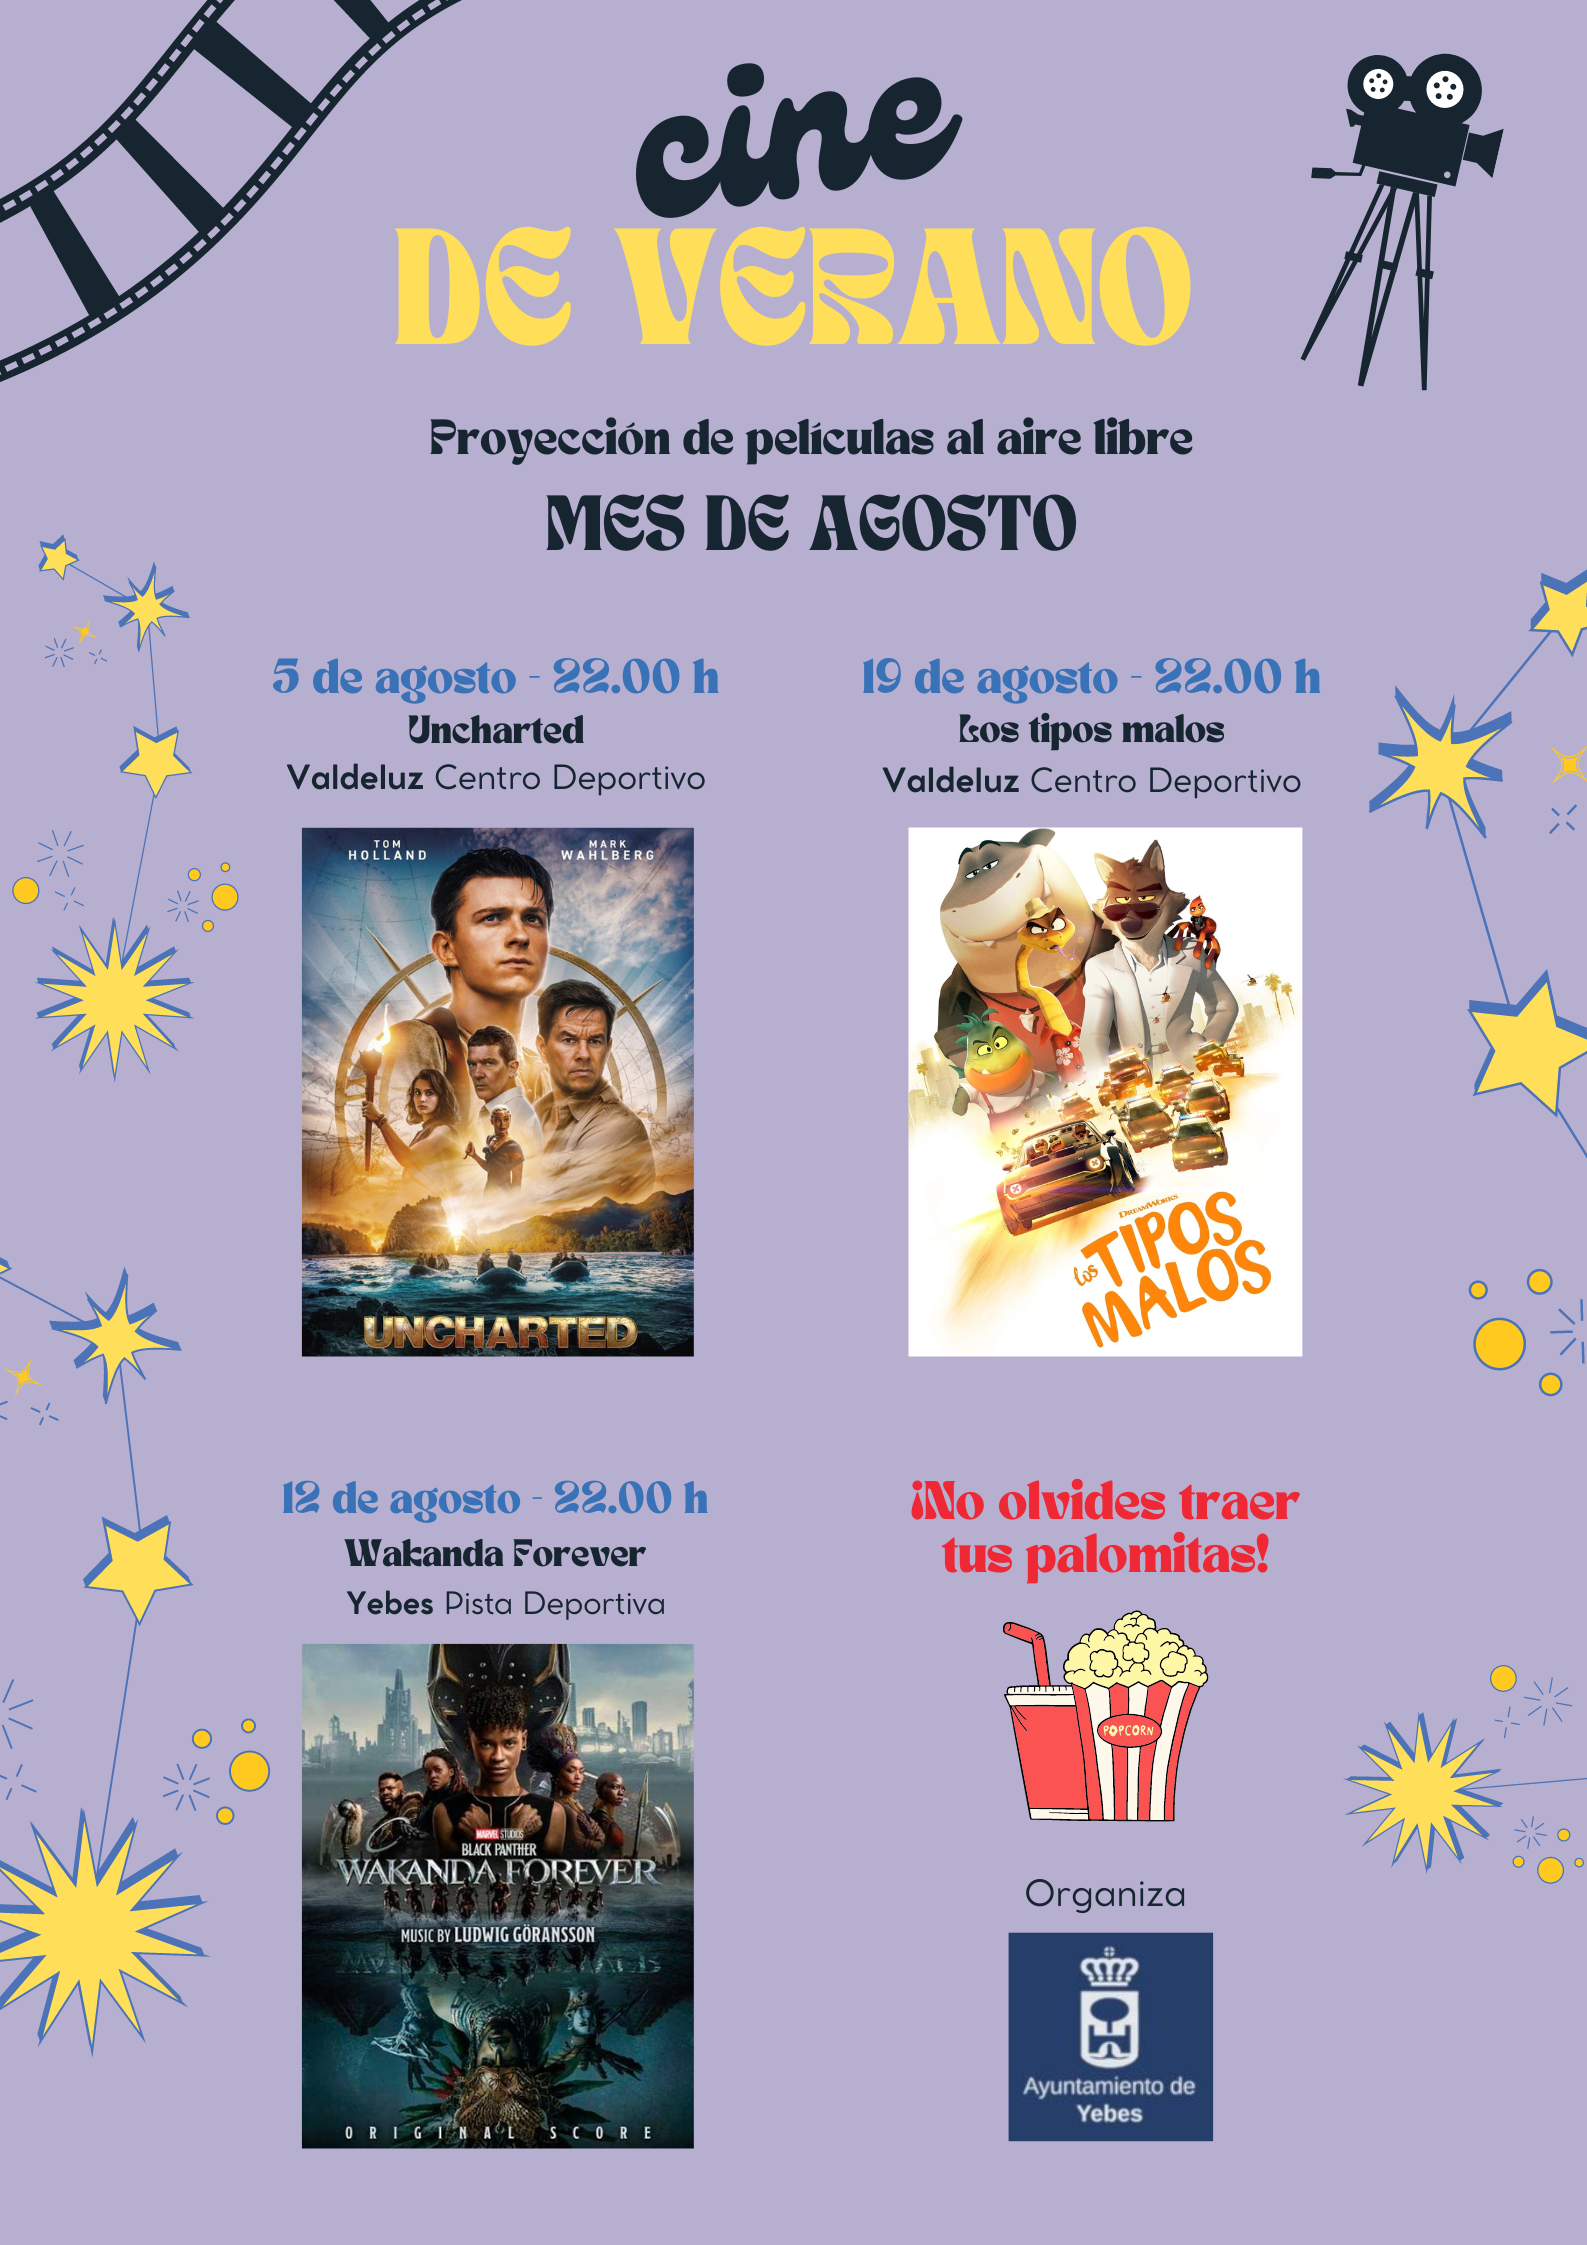 Disfruta del cine de verano al aire libre en Yebes y Valdeluz durante julio y agosto